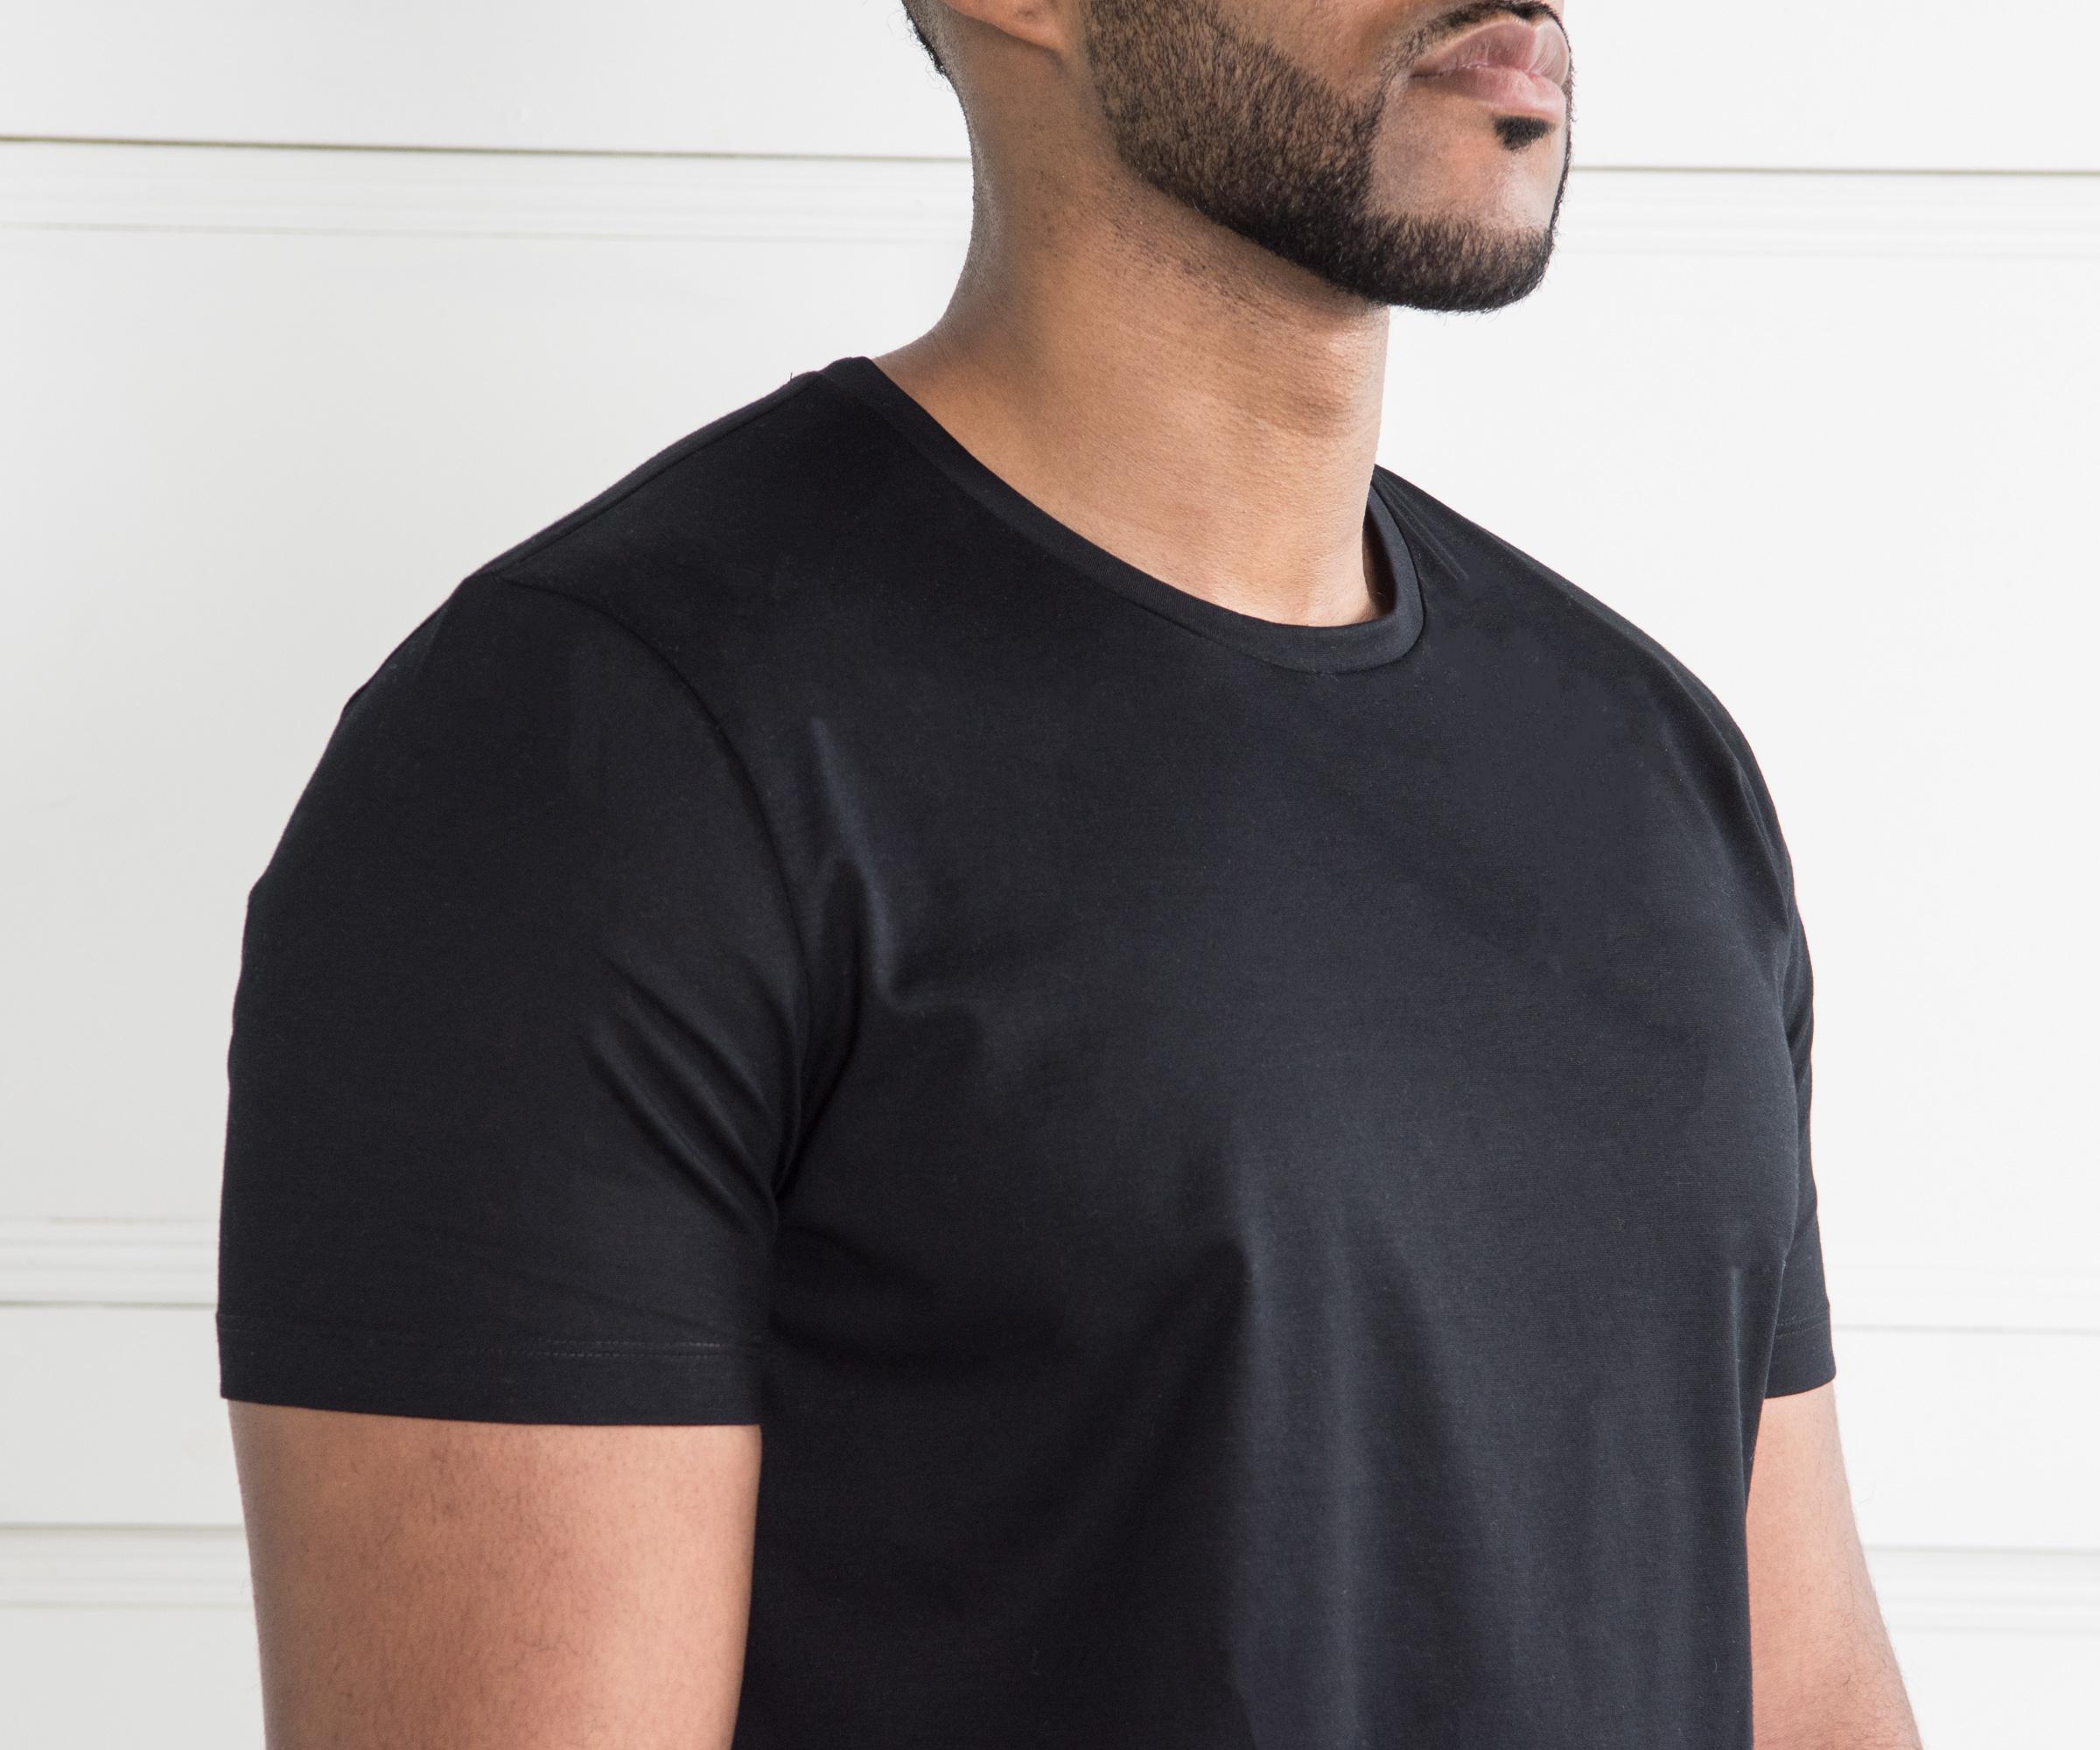 BOSS 'tessler 100' Luxury Slim Fit T-shirt Black in Black for Men - Lyst